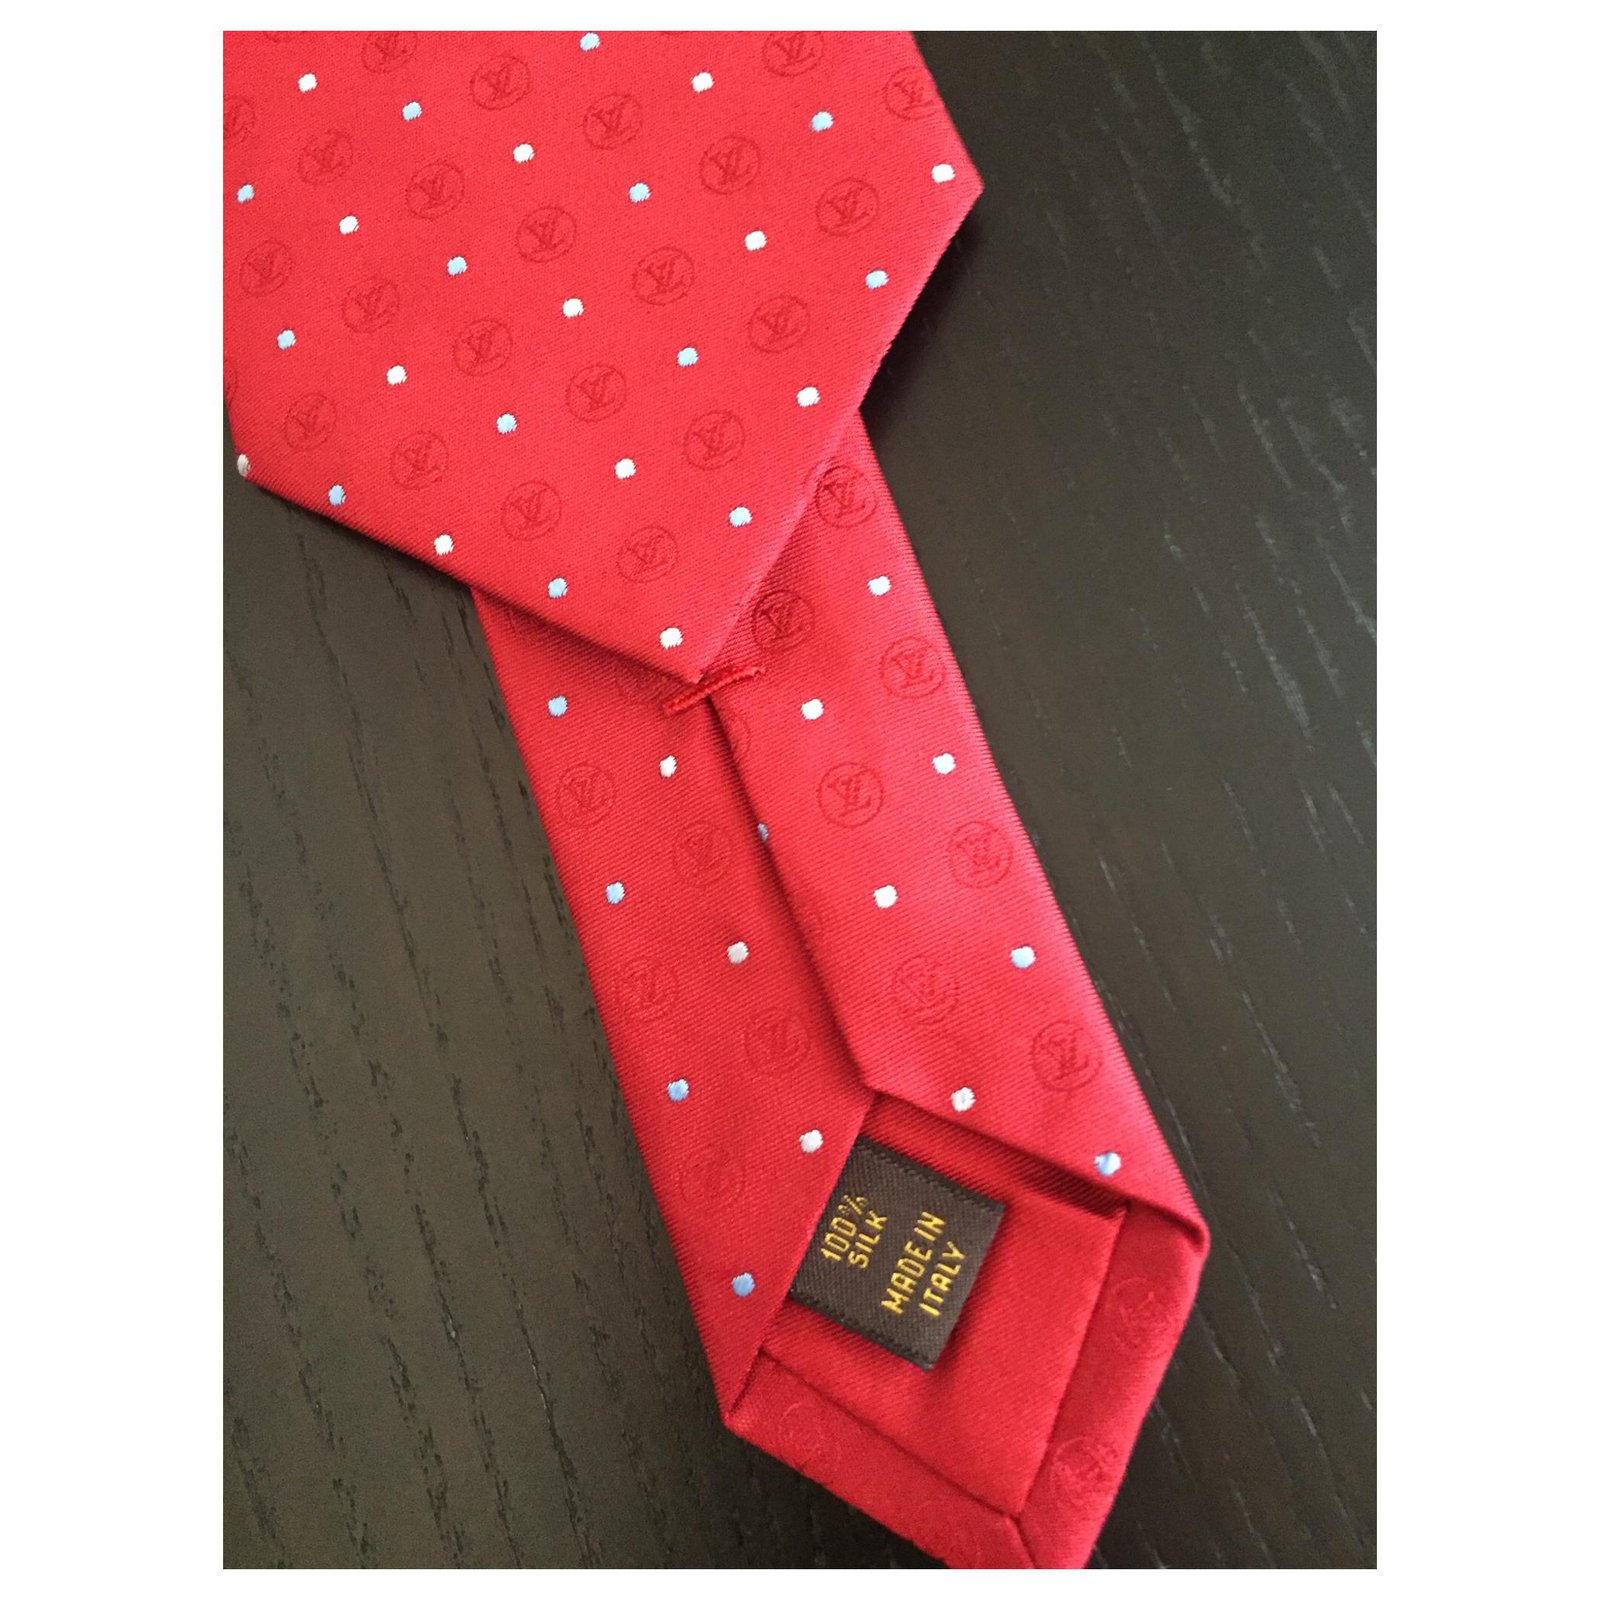 Louis Vuitton Men's Necktie Black Red Cream SKU 000284-29